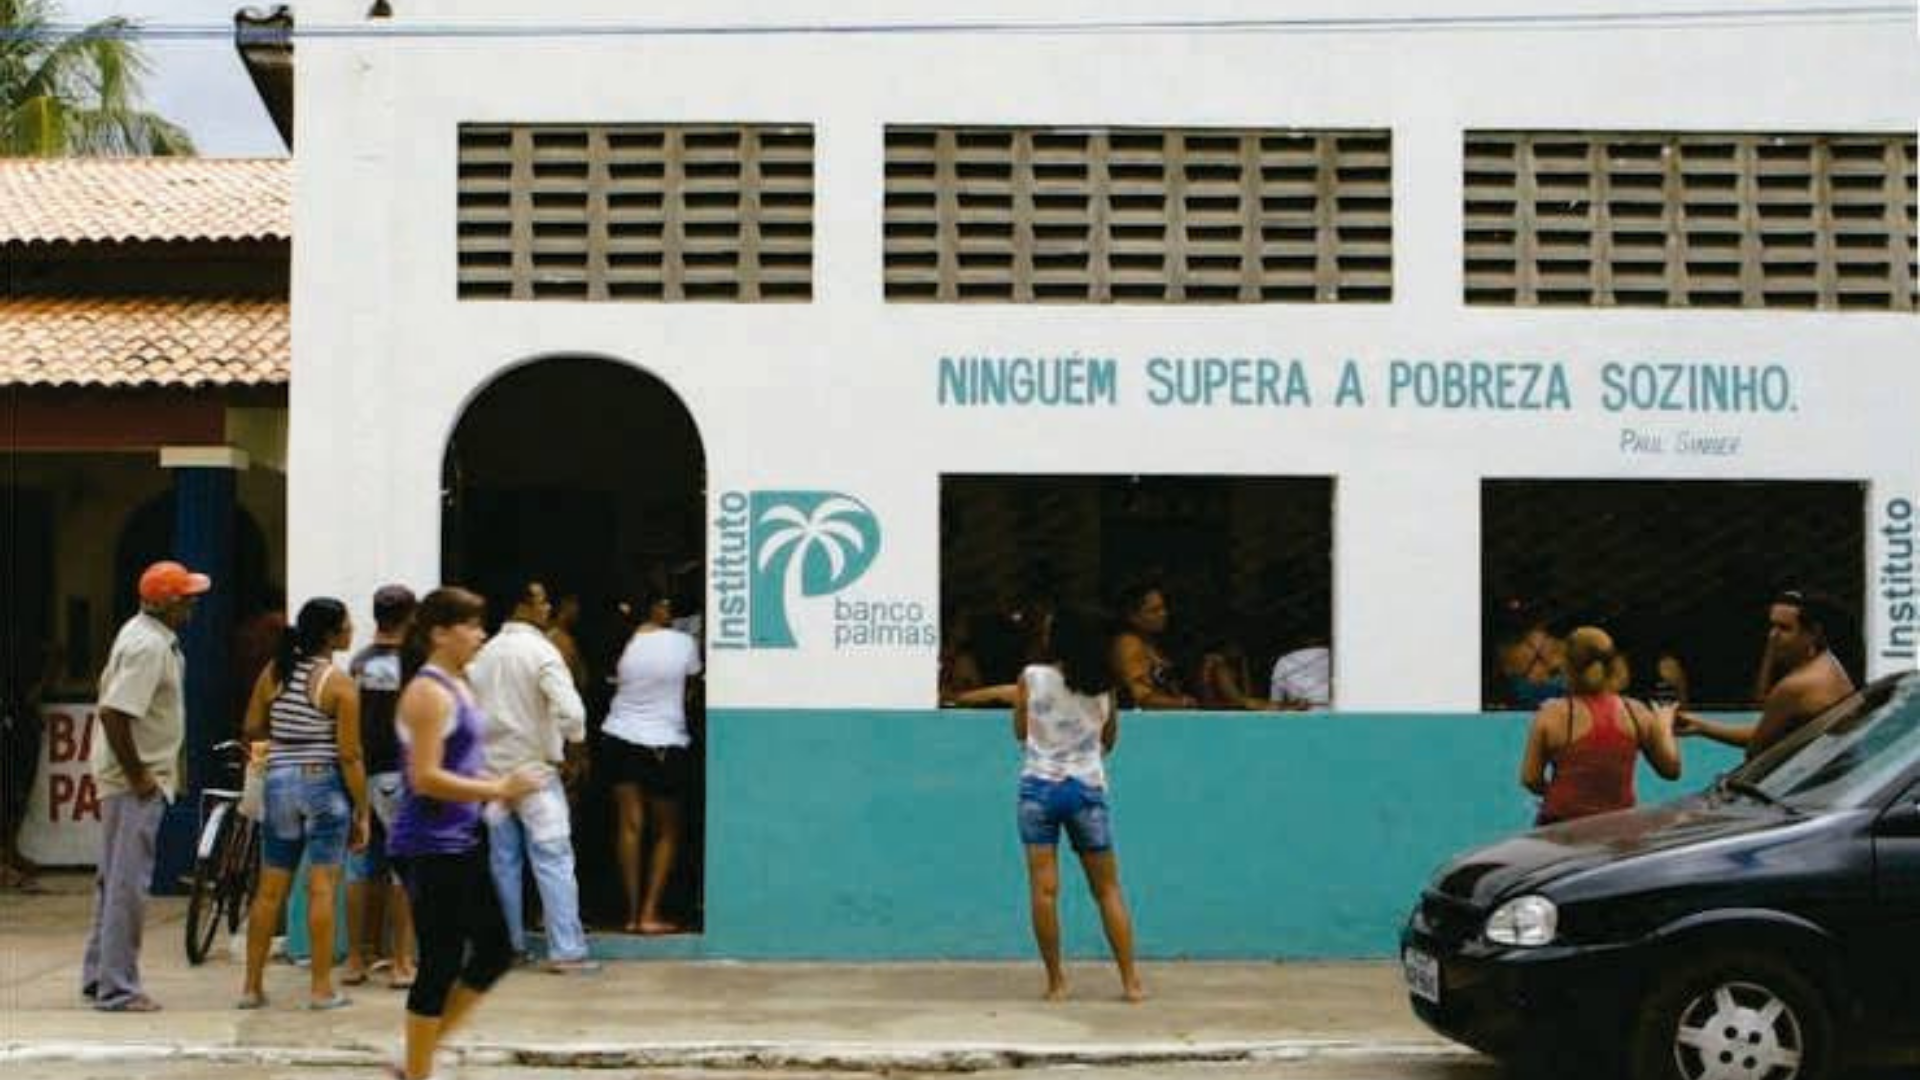 Foto da fachada do Banco Palmas, primeiro banco comunitário do Brasil. Reprodução: https://blog.acerto.com.br/informacoes-bancarias/banco-palmas/